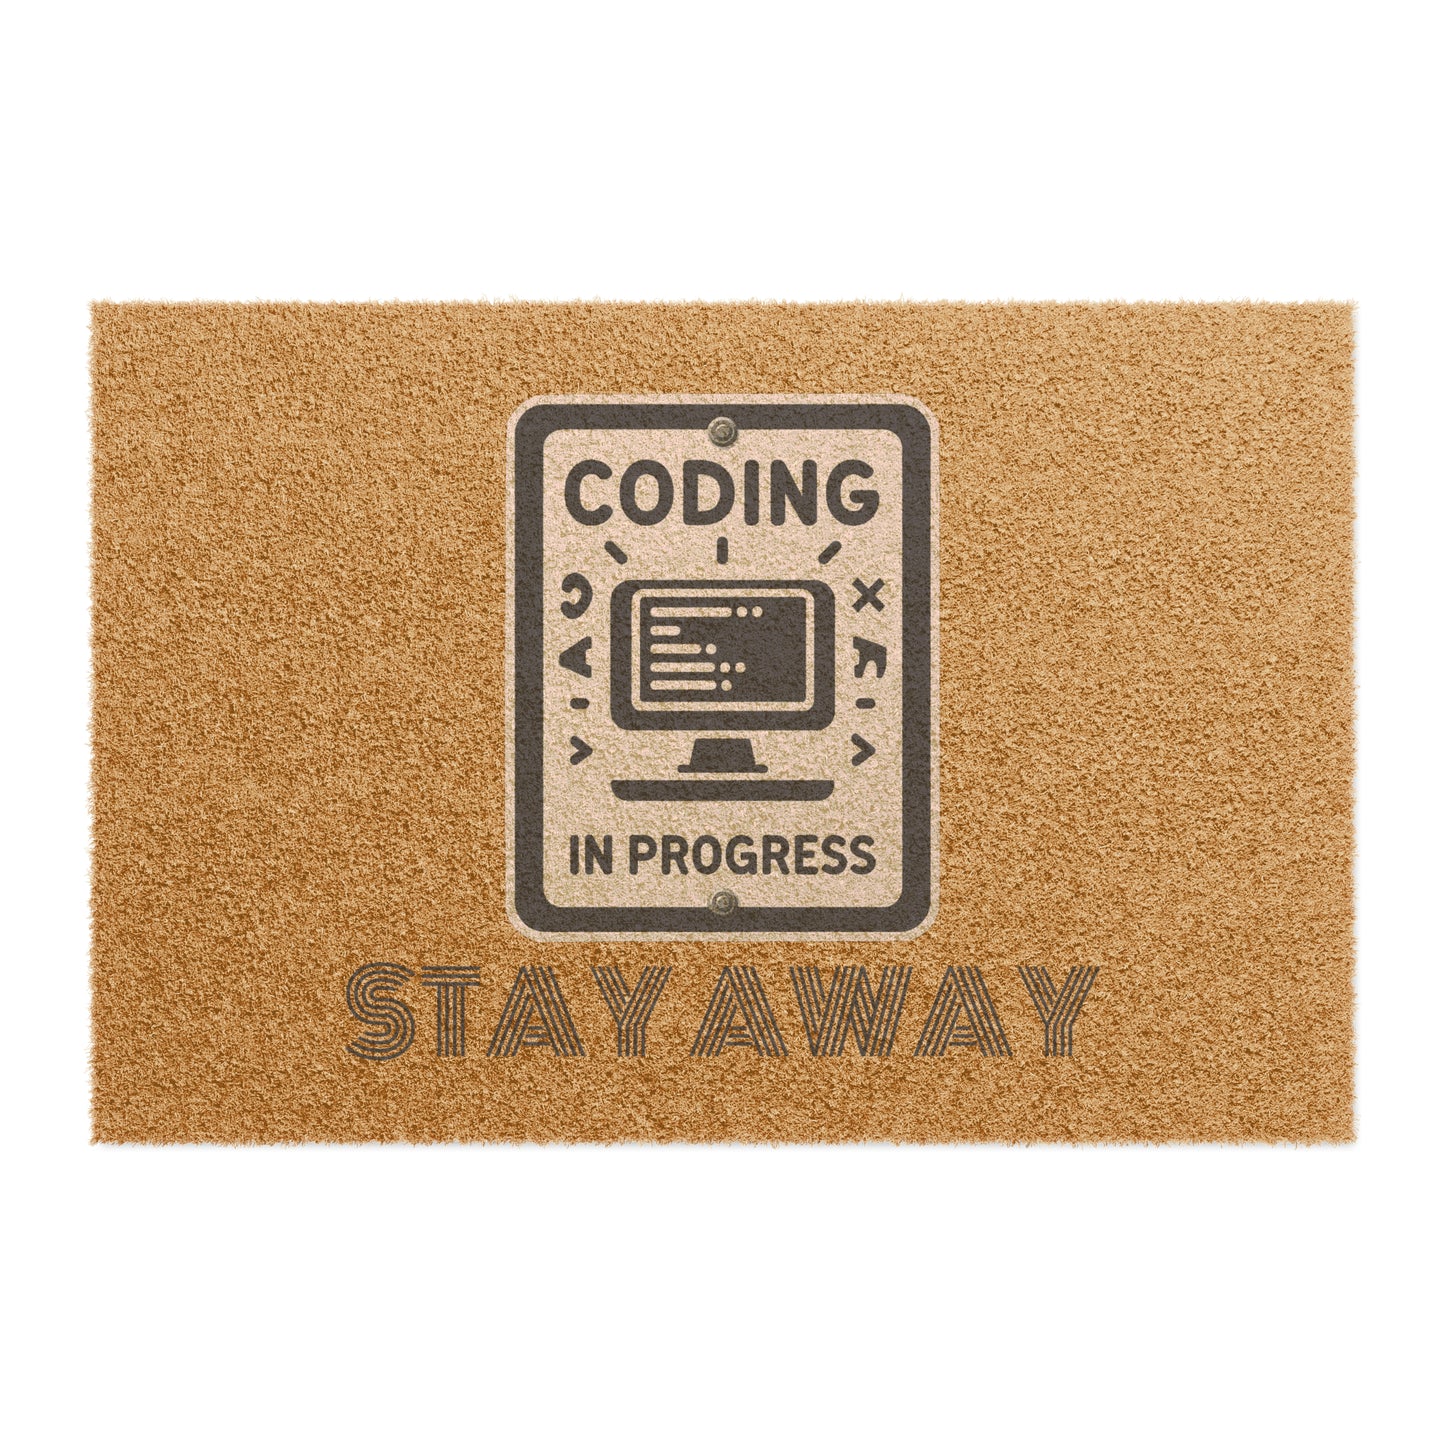 Coding In Progress Stay Away - Doormat